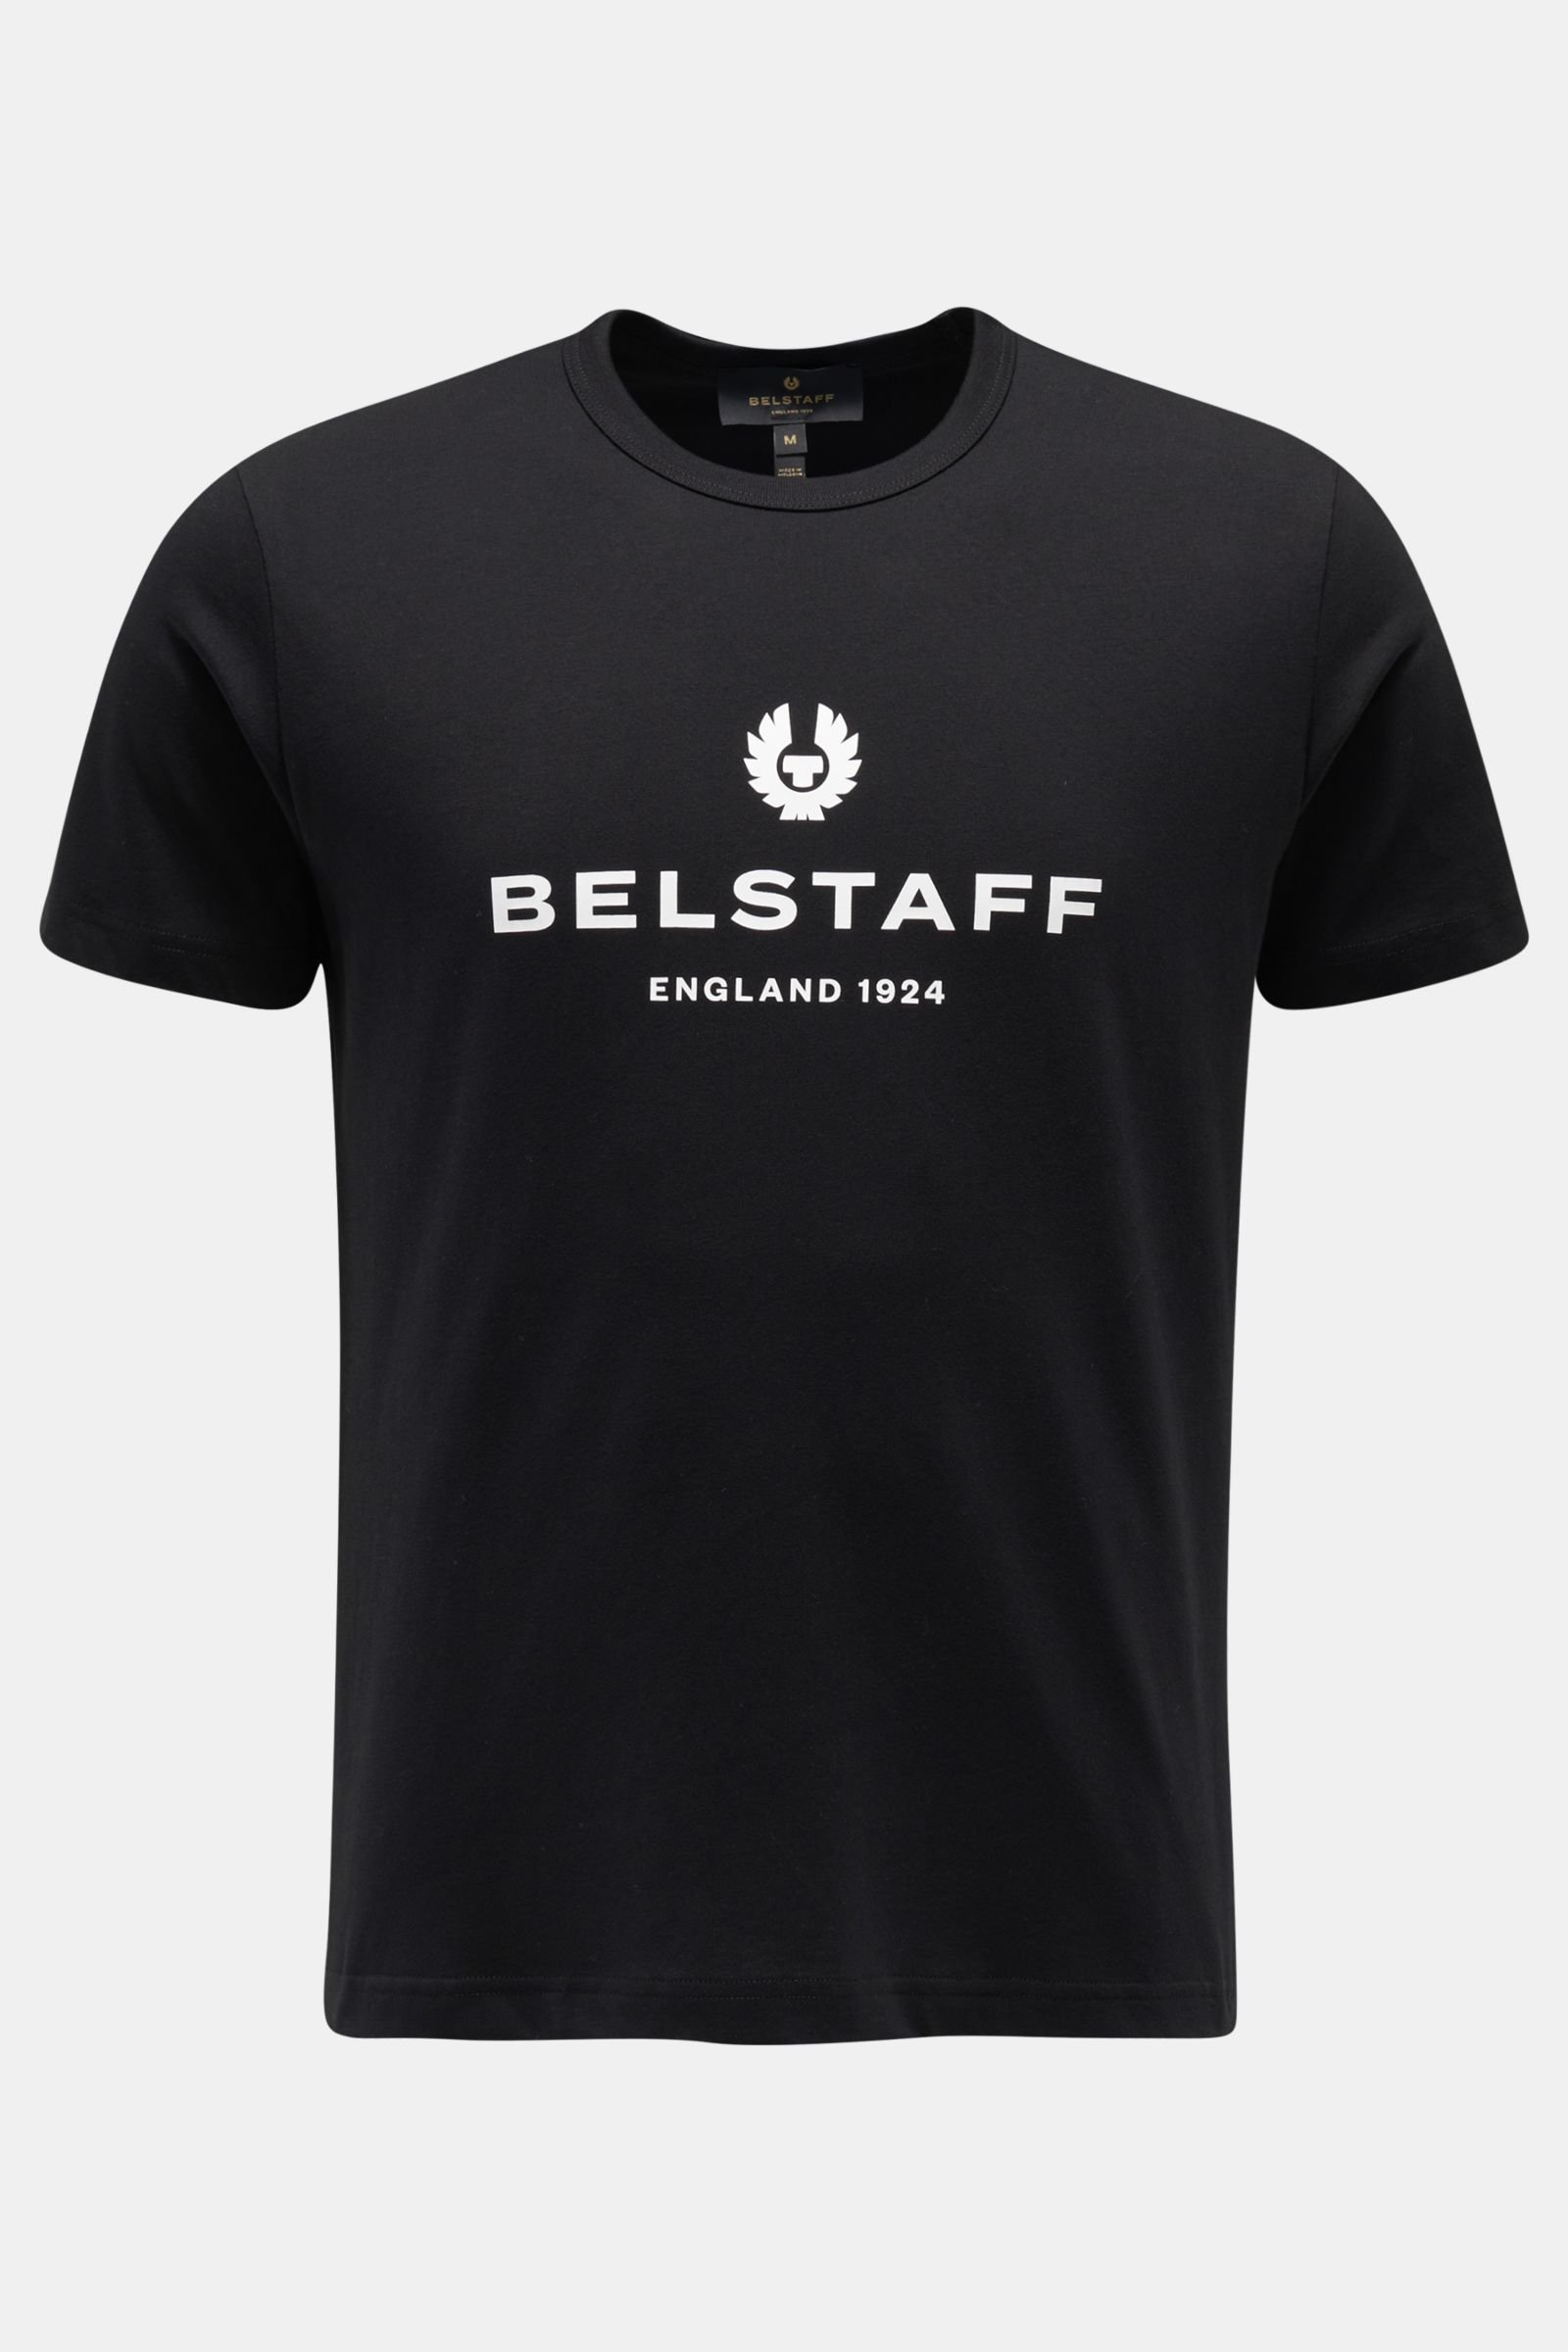 Rundhals-T-Shirt 'Belstaff 1924' schwarz